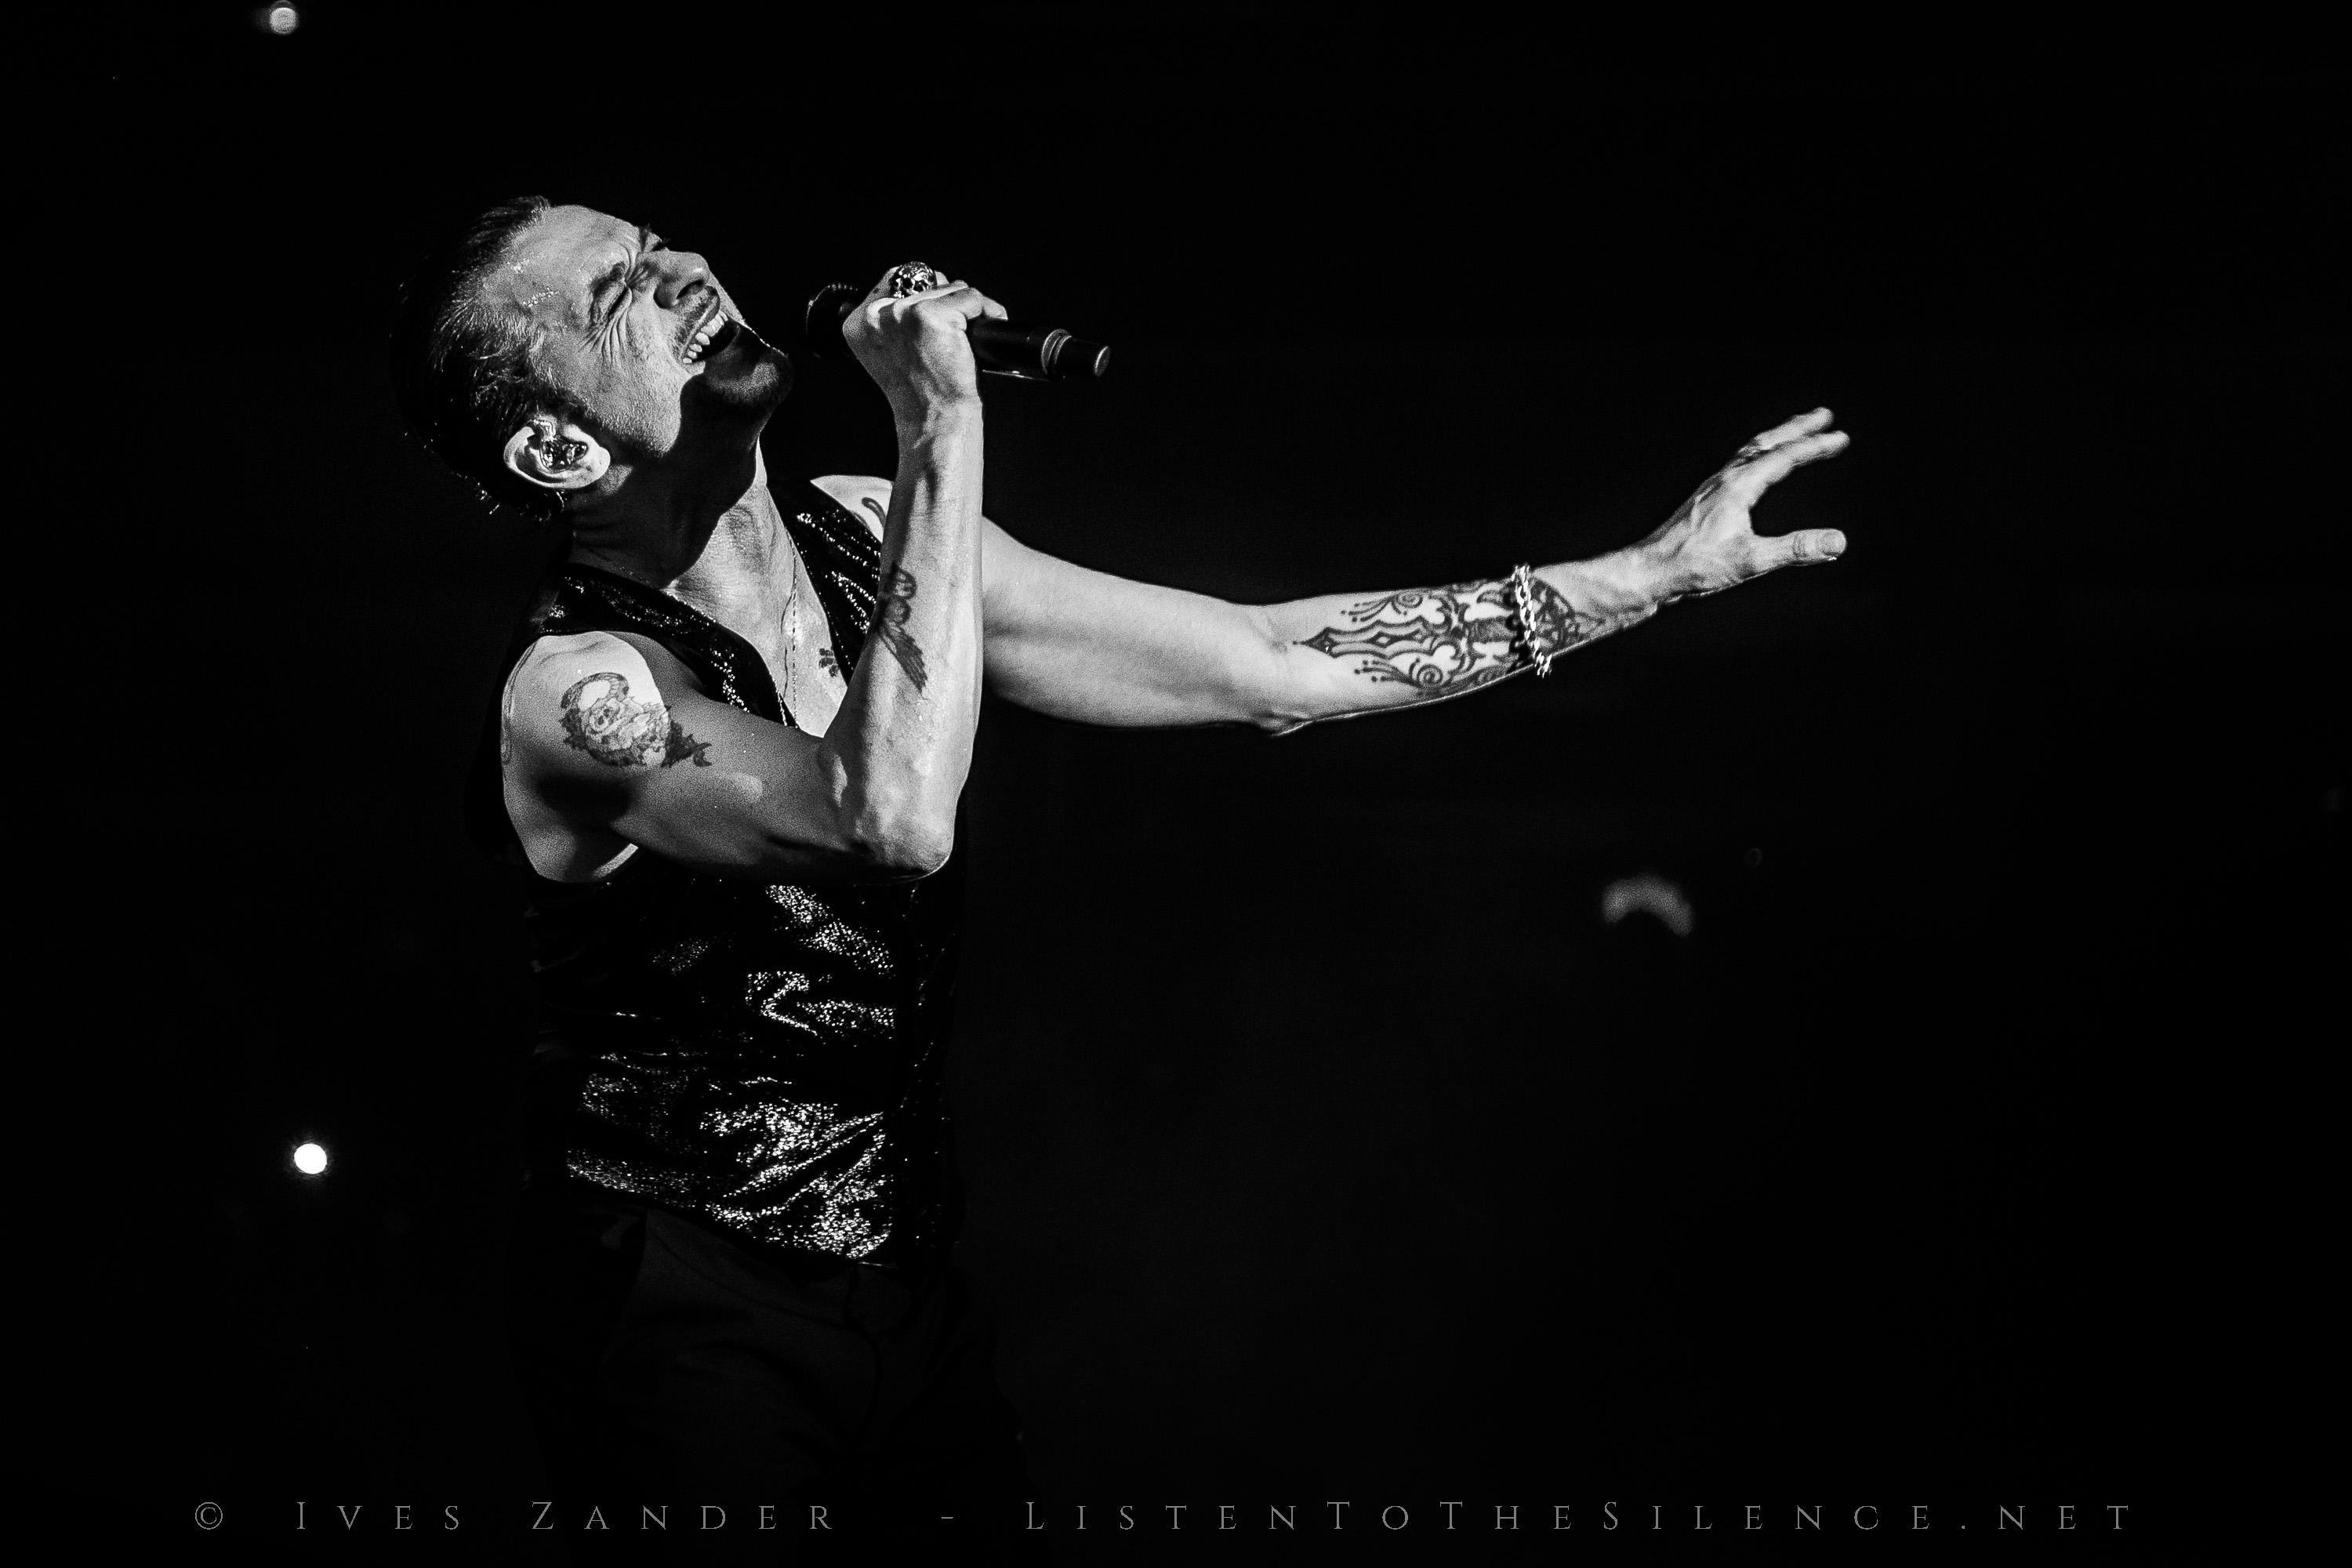 Depeche Mode<br/>Arena Nürnberg 2018